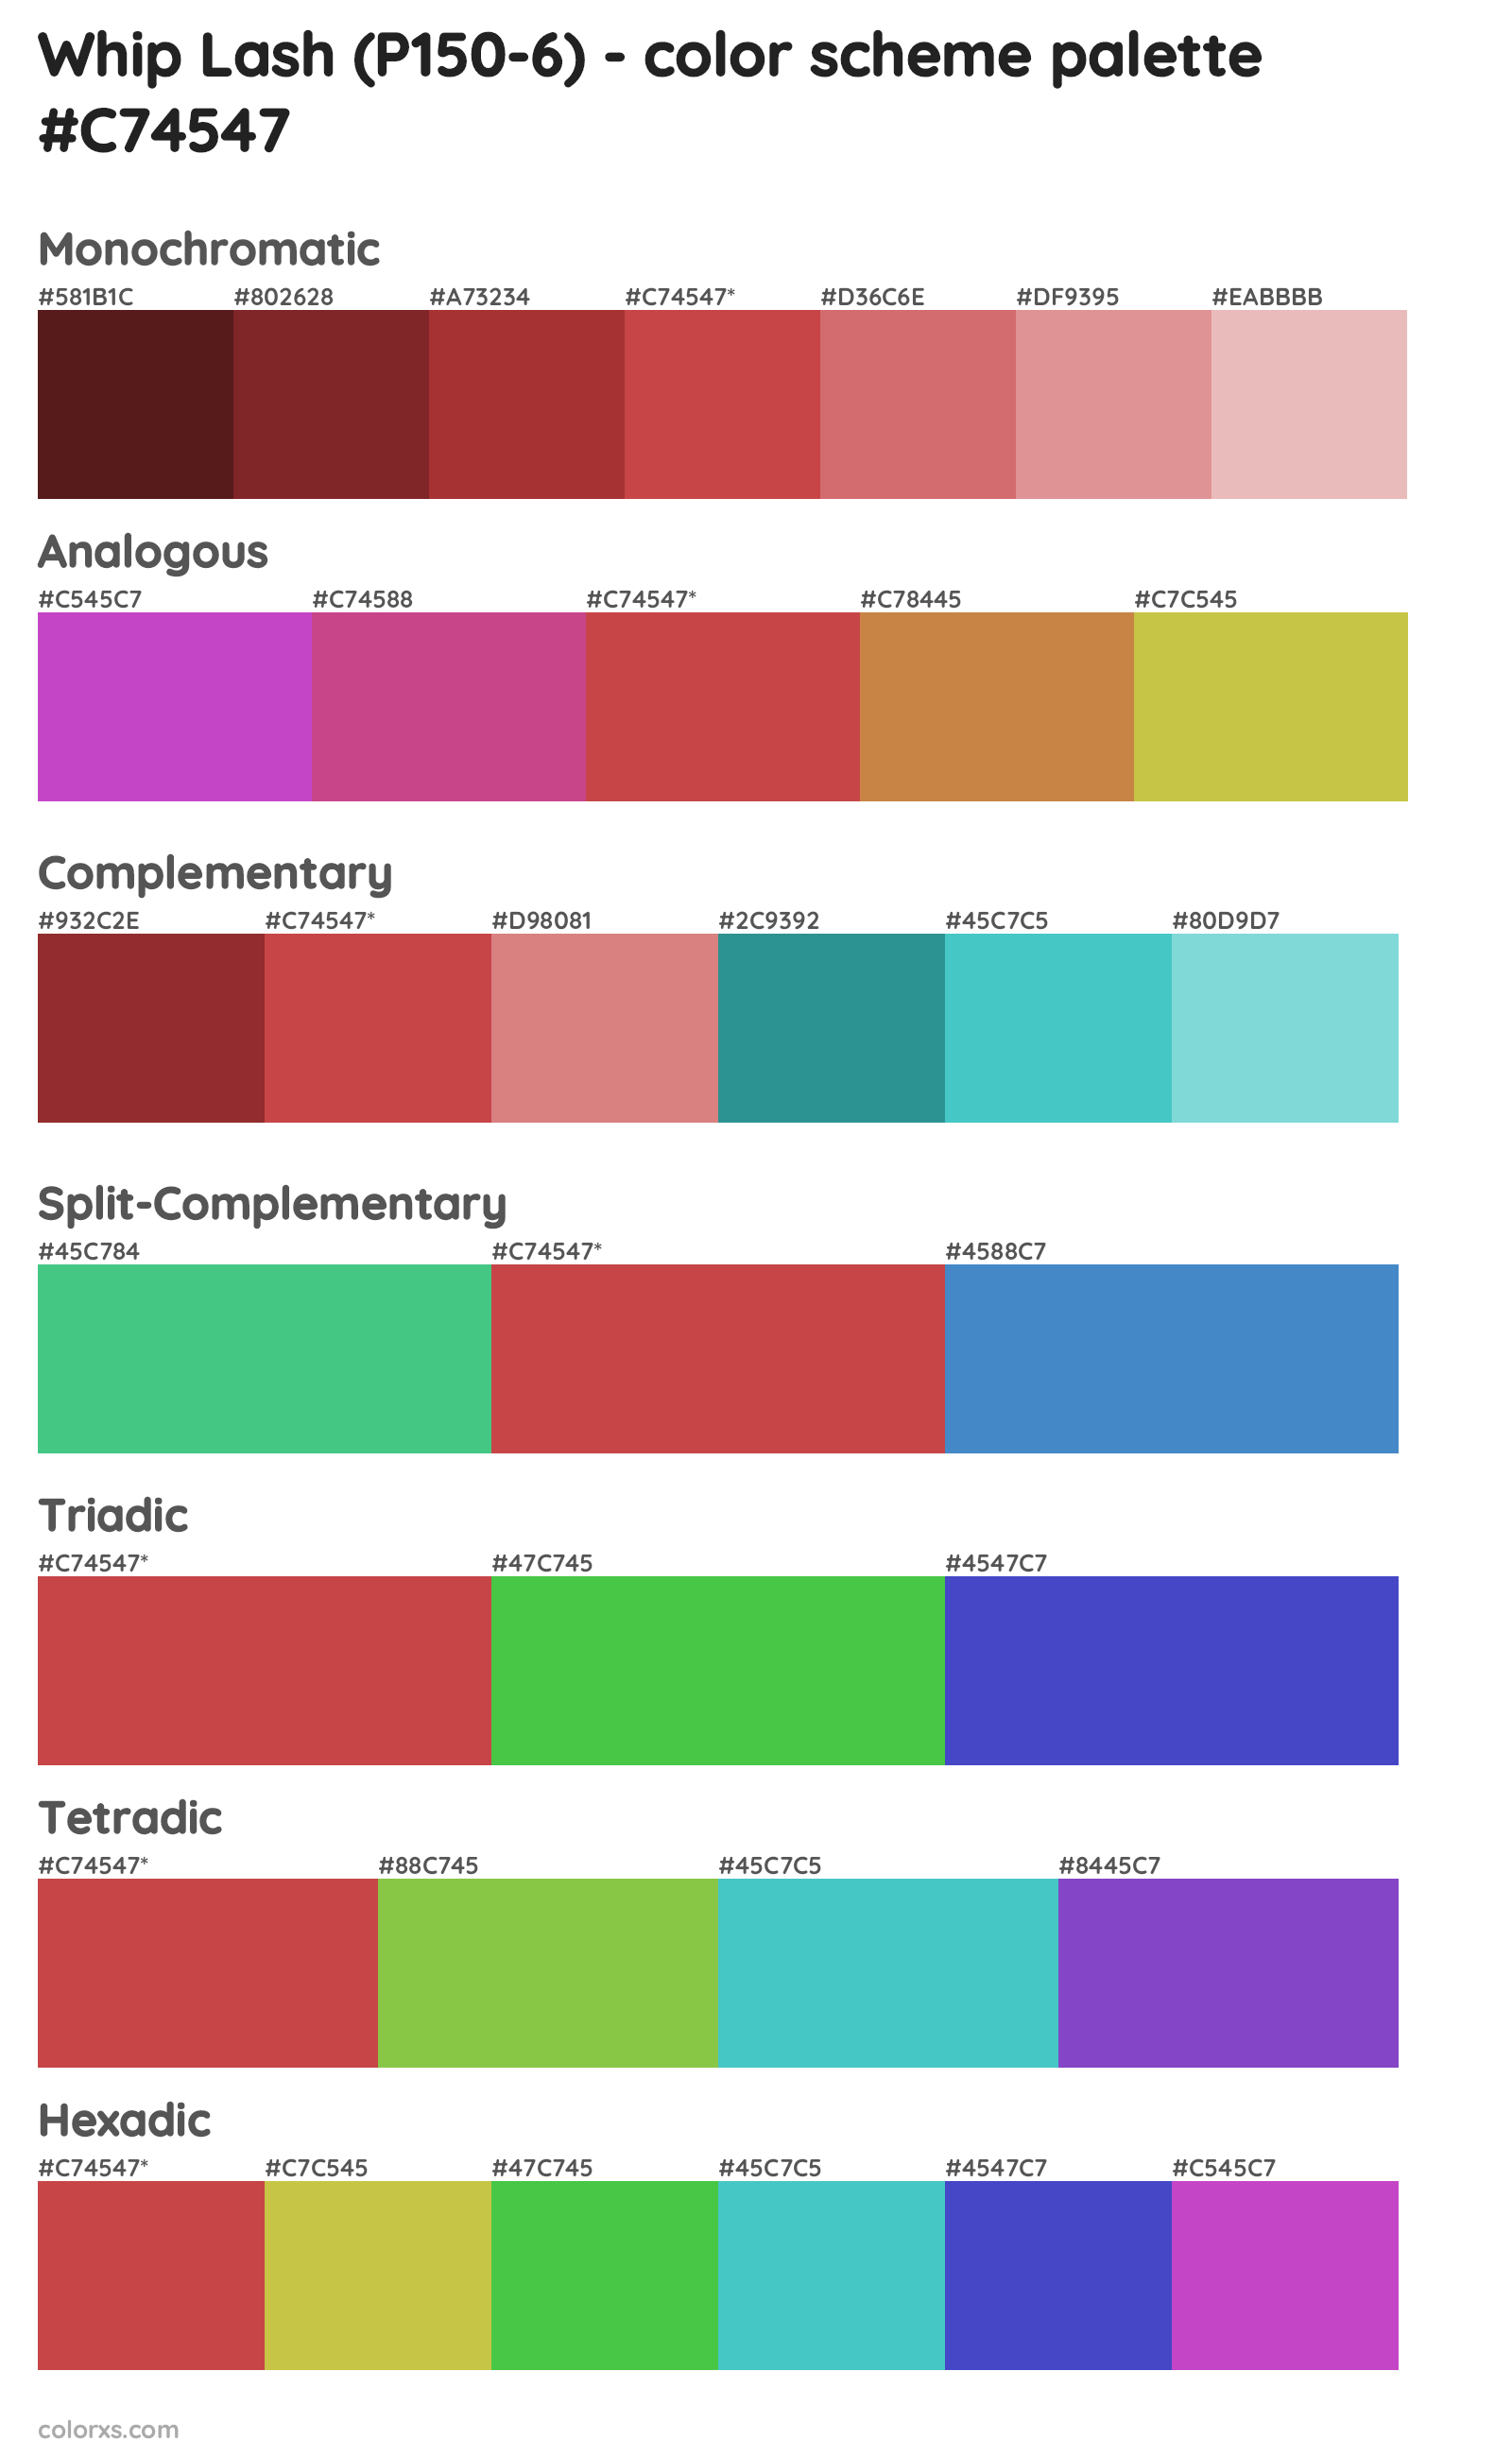 Whip Lash (P150-6) Color Scheme Palettes